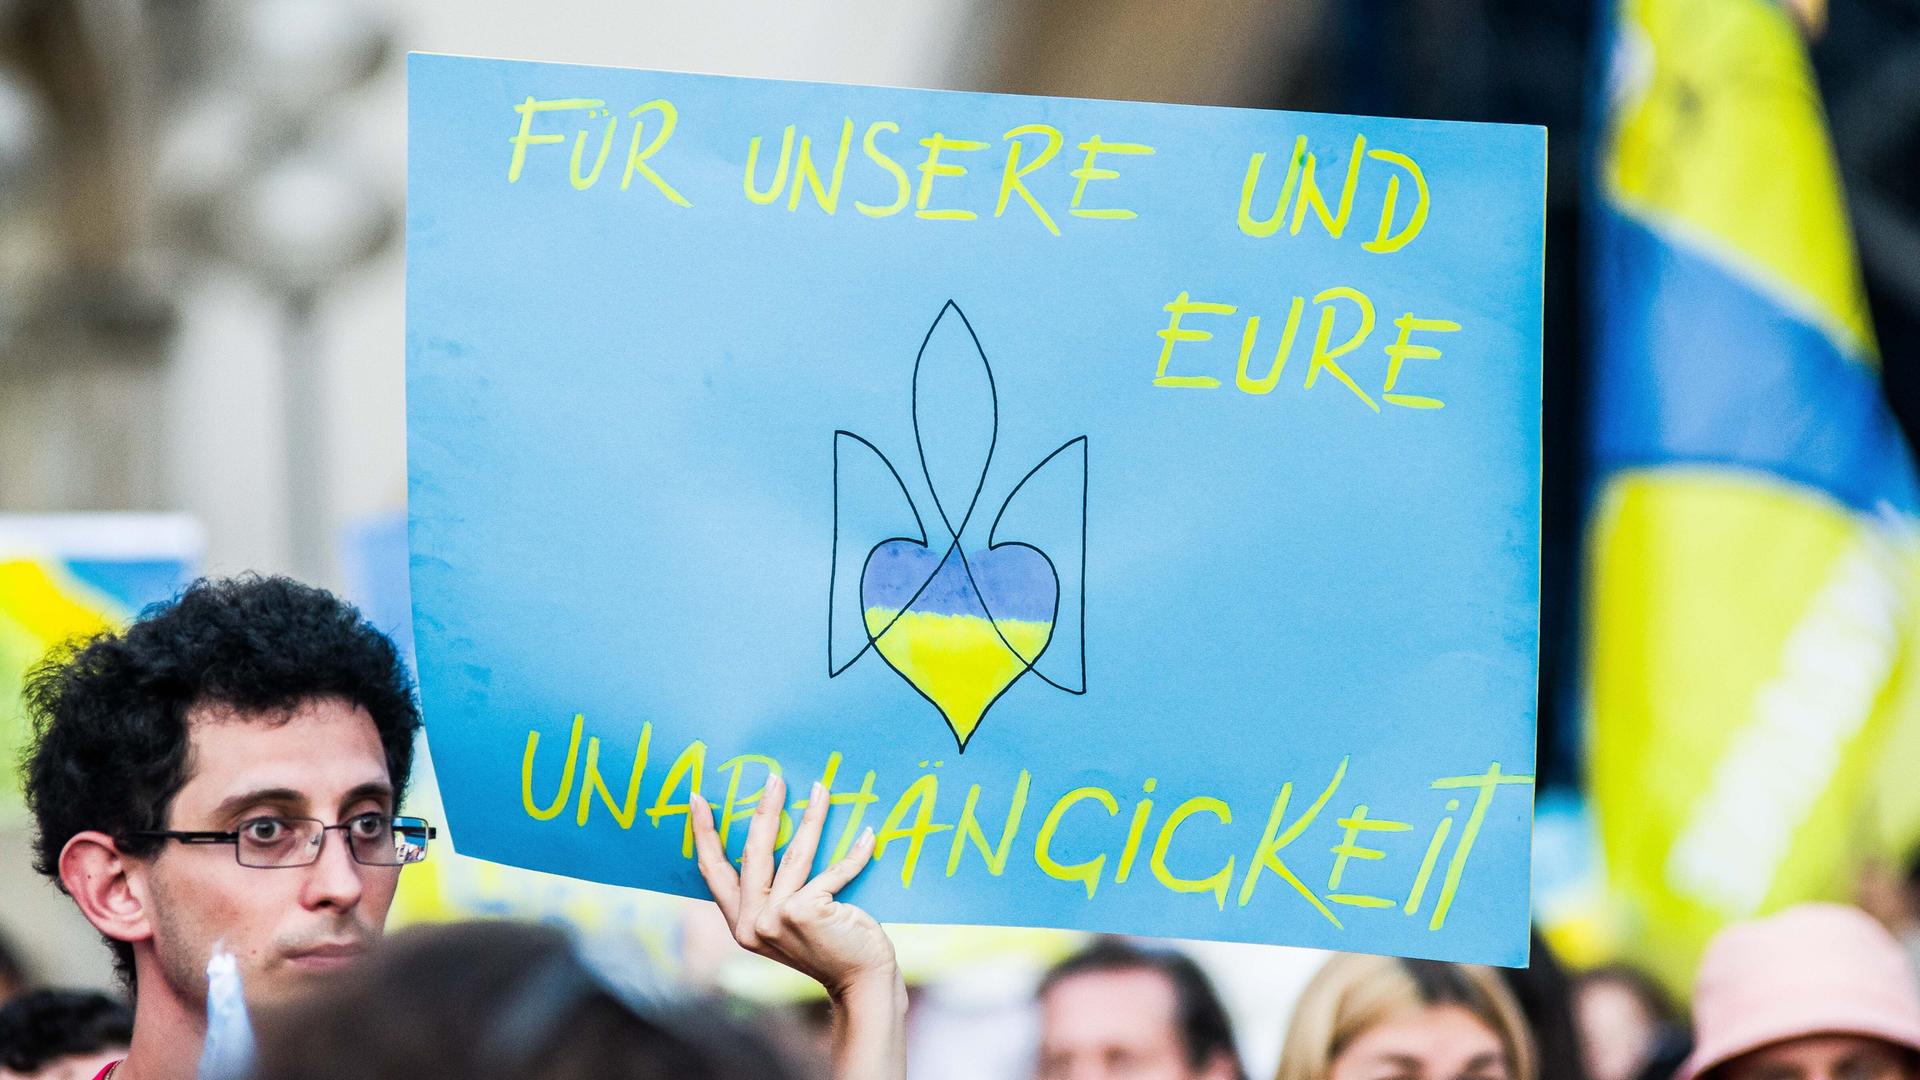 Ukrainische Geflüchtete und Unterstützerinnen und Unterstützer demonstrieren am Tag der Unabhängigkeit in München - auf einem Plakat steht "Für unsere und eure Unabhängigkeit", darauf auch das mit einem Herzen abgewandelte Zeichen des ukranischen Militärs